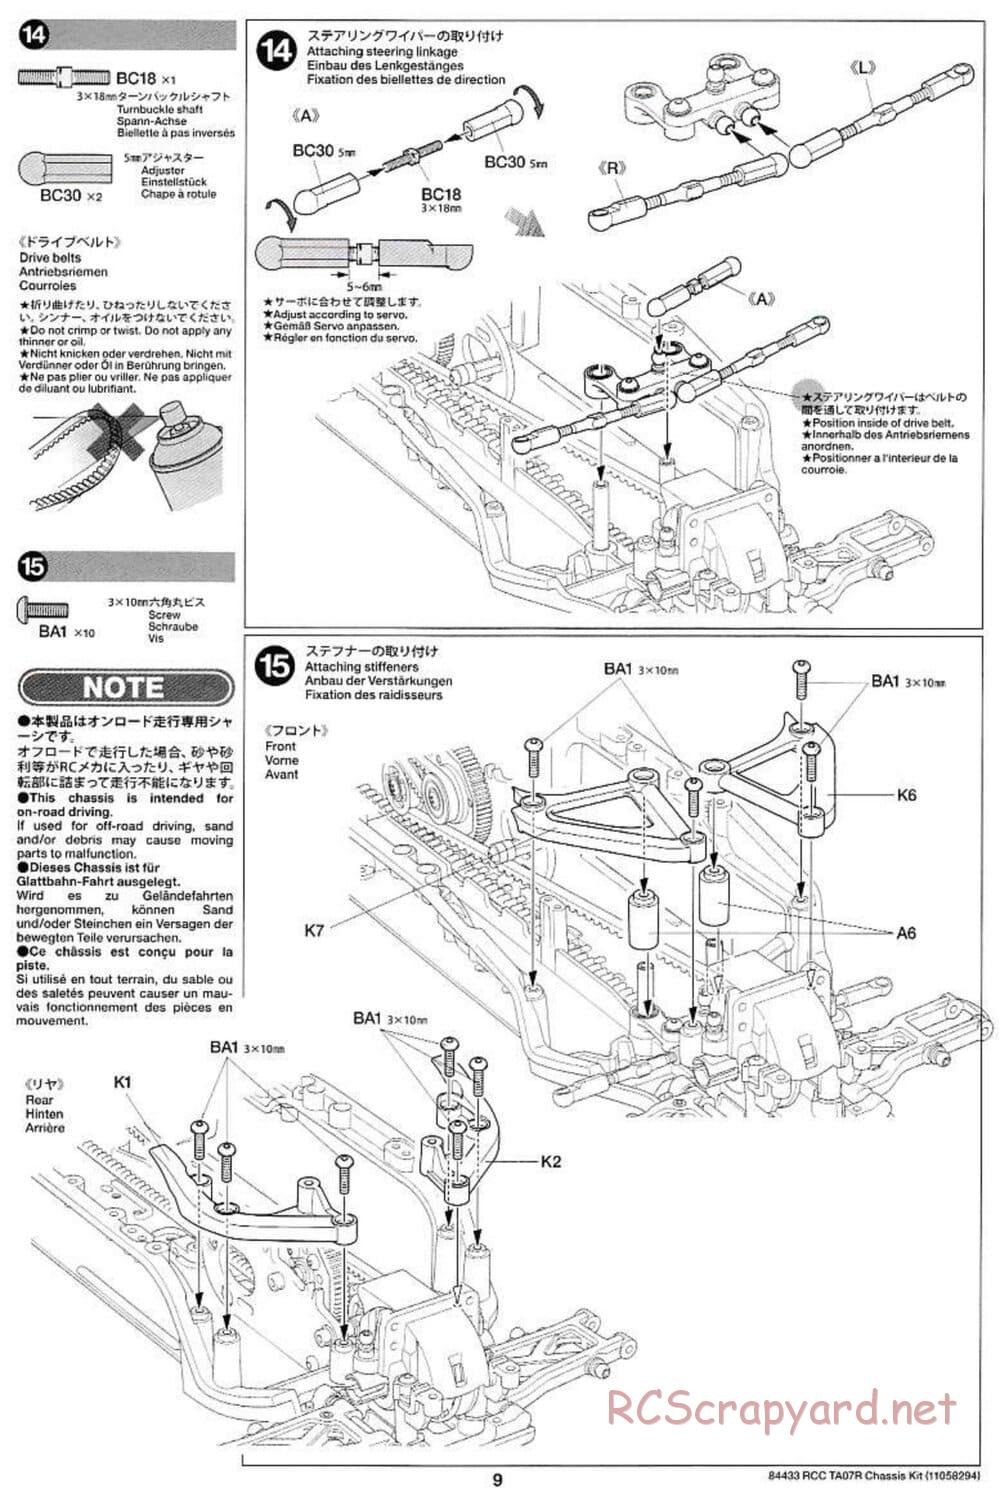 Tamiya - TA07 R Chassis - Manual - Page 9